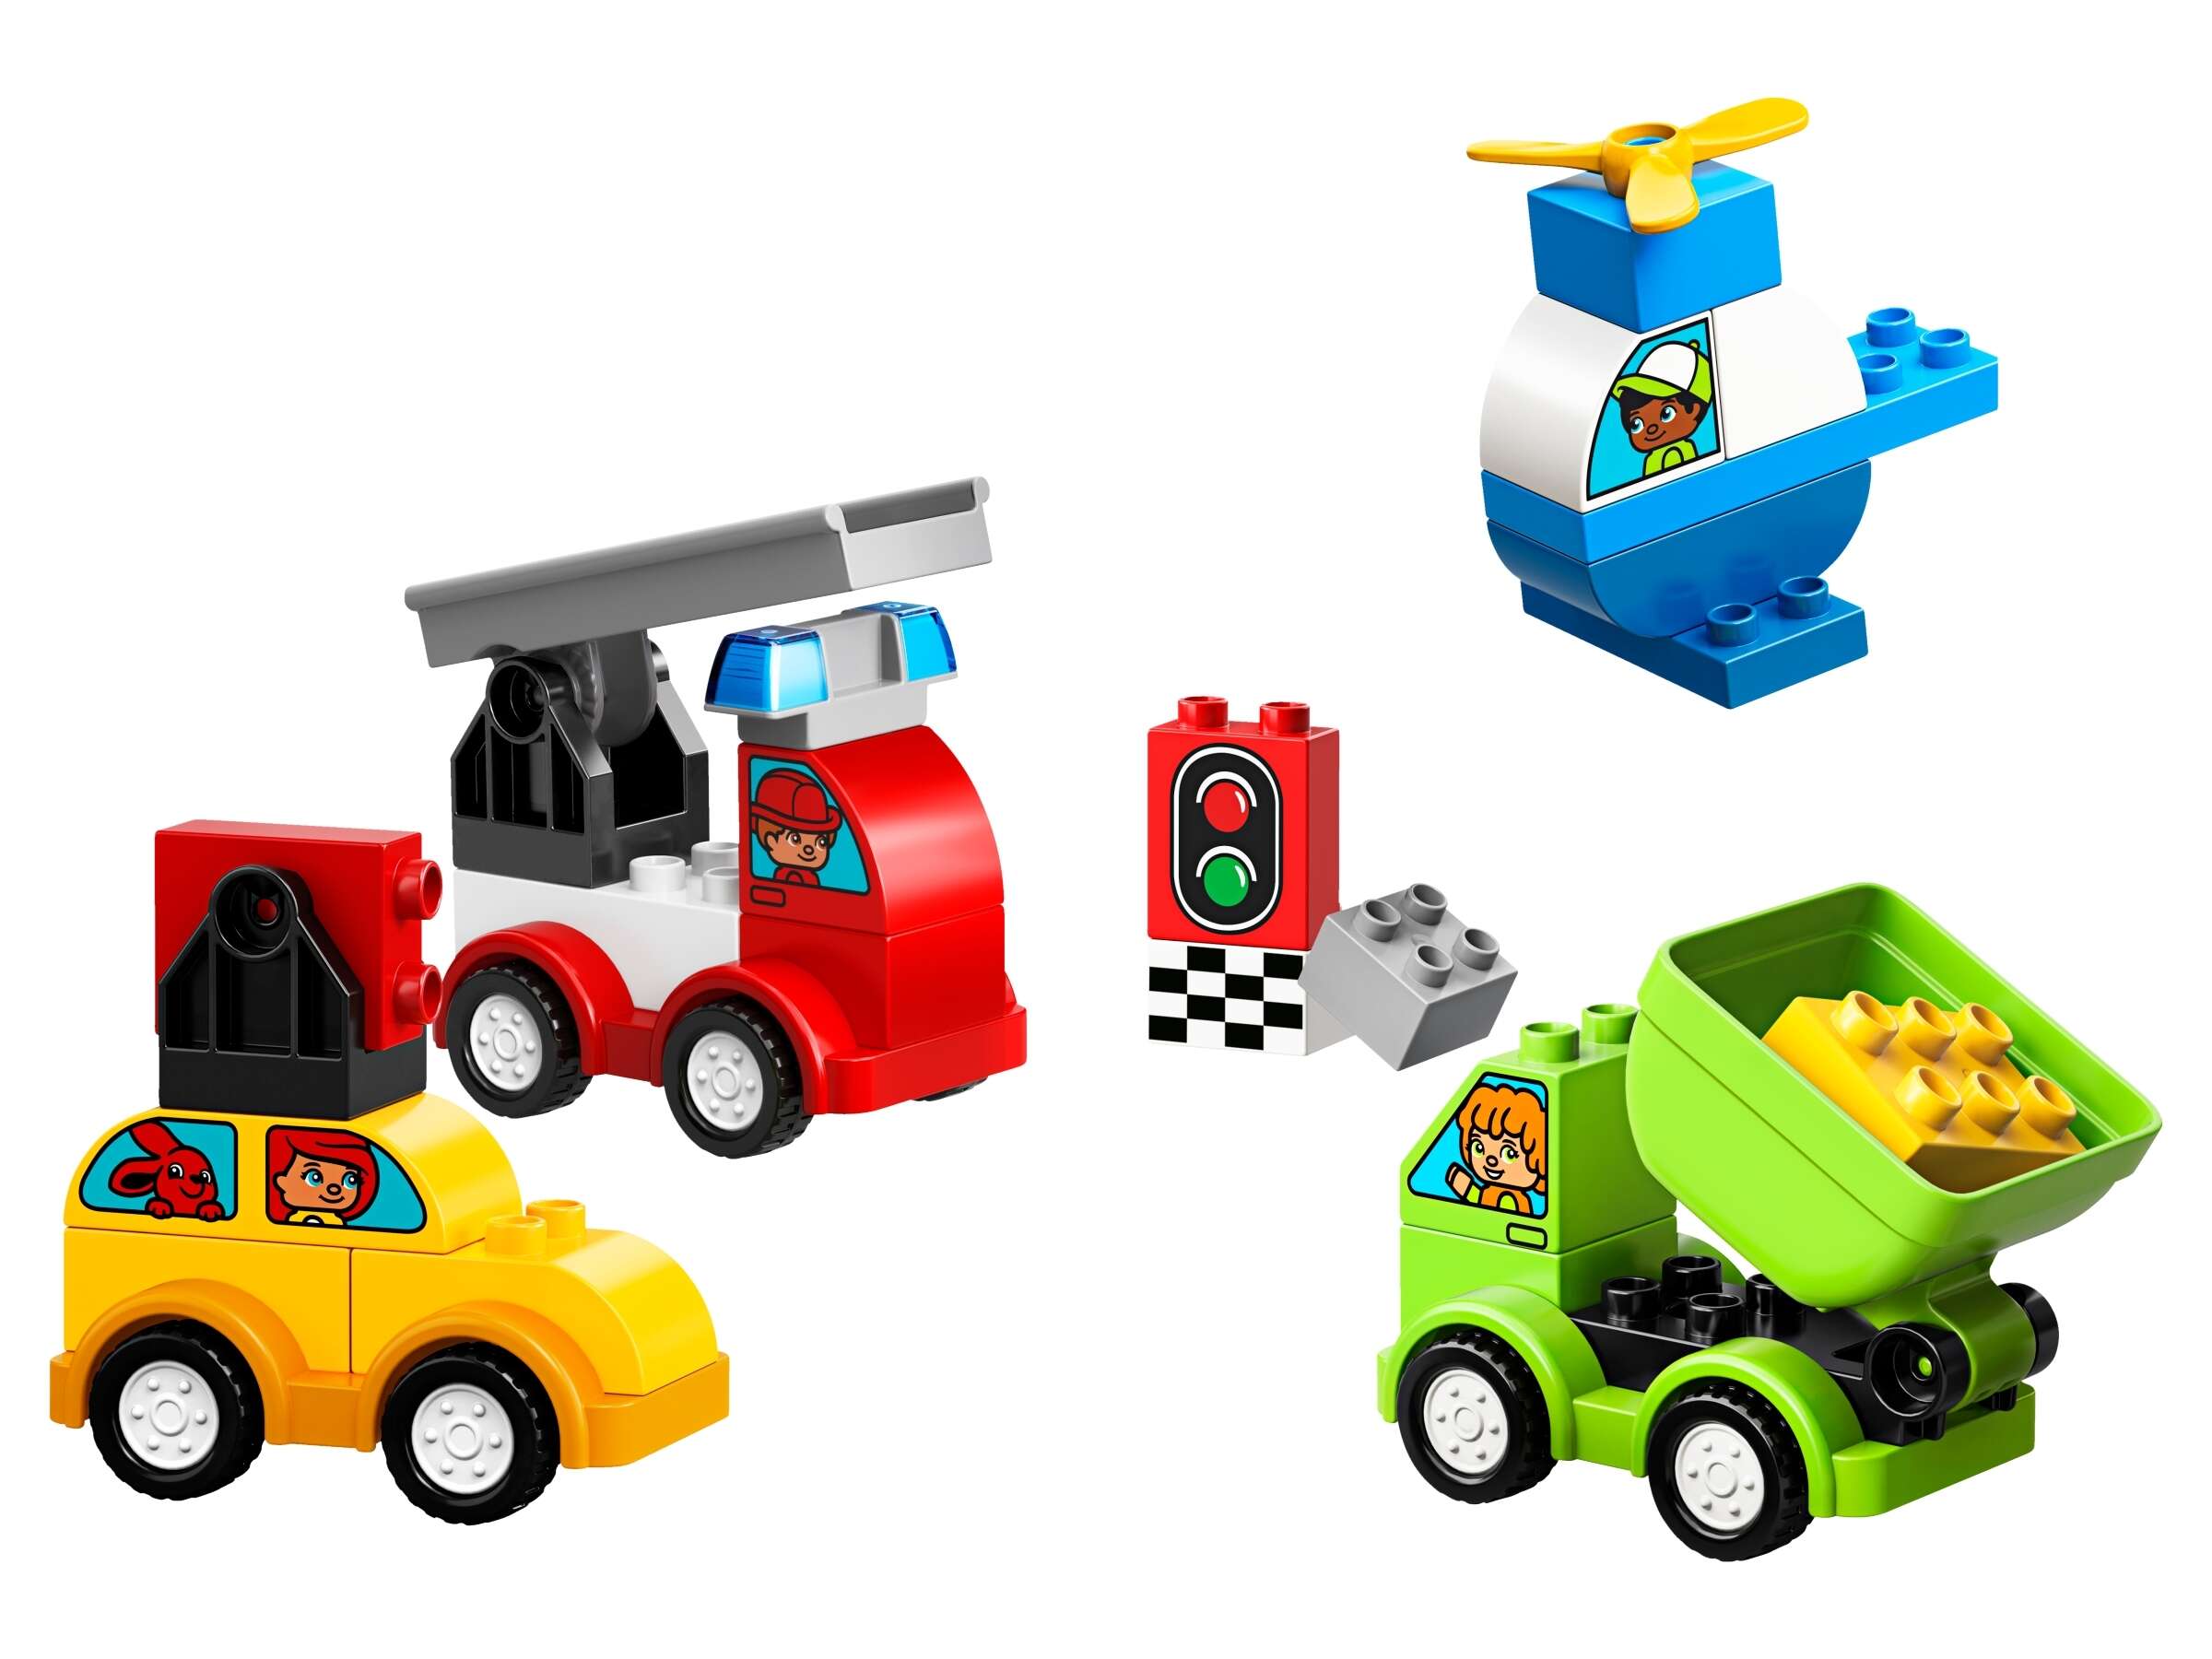 LEGO 10886 DUPLO Meine ersten Fahrzeuge, Bauset mit 4 baubaren Fahrzeugen